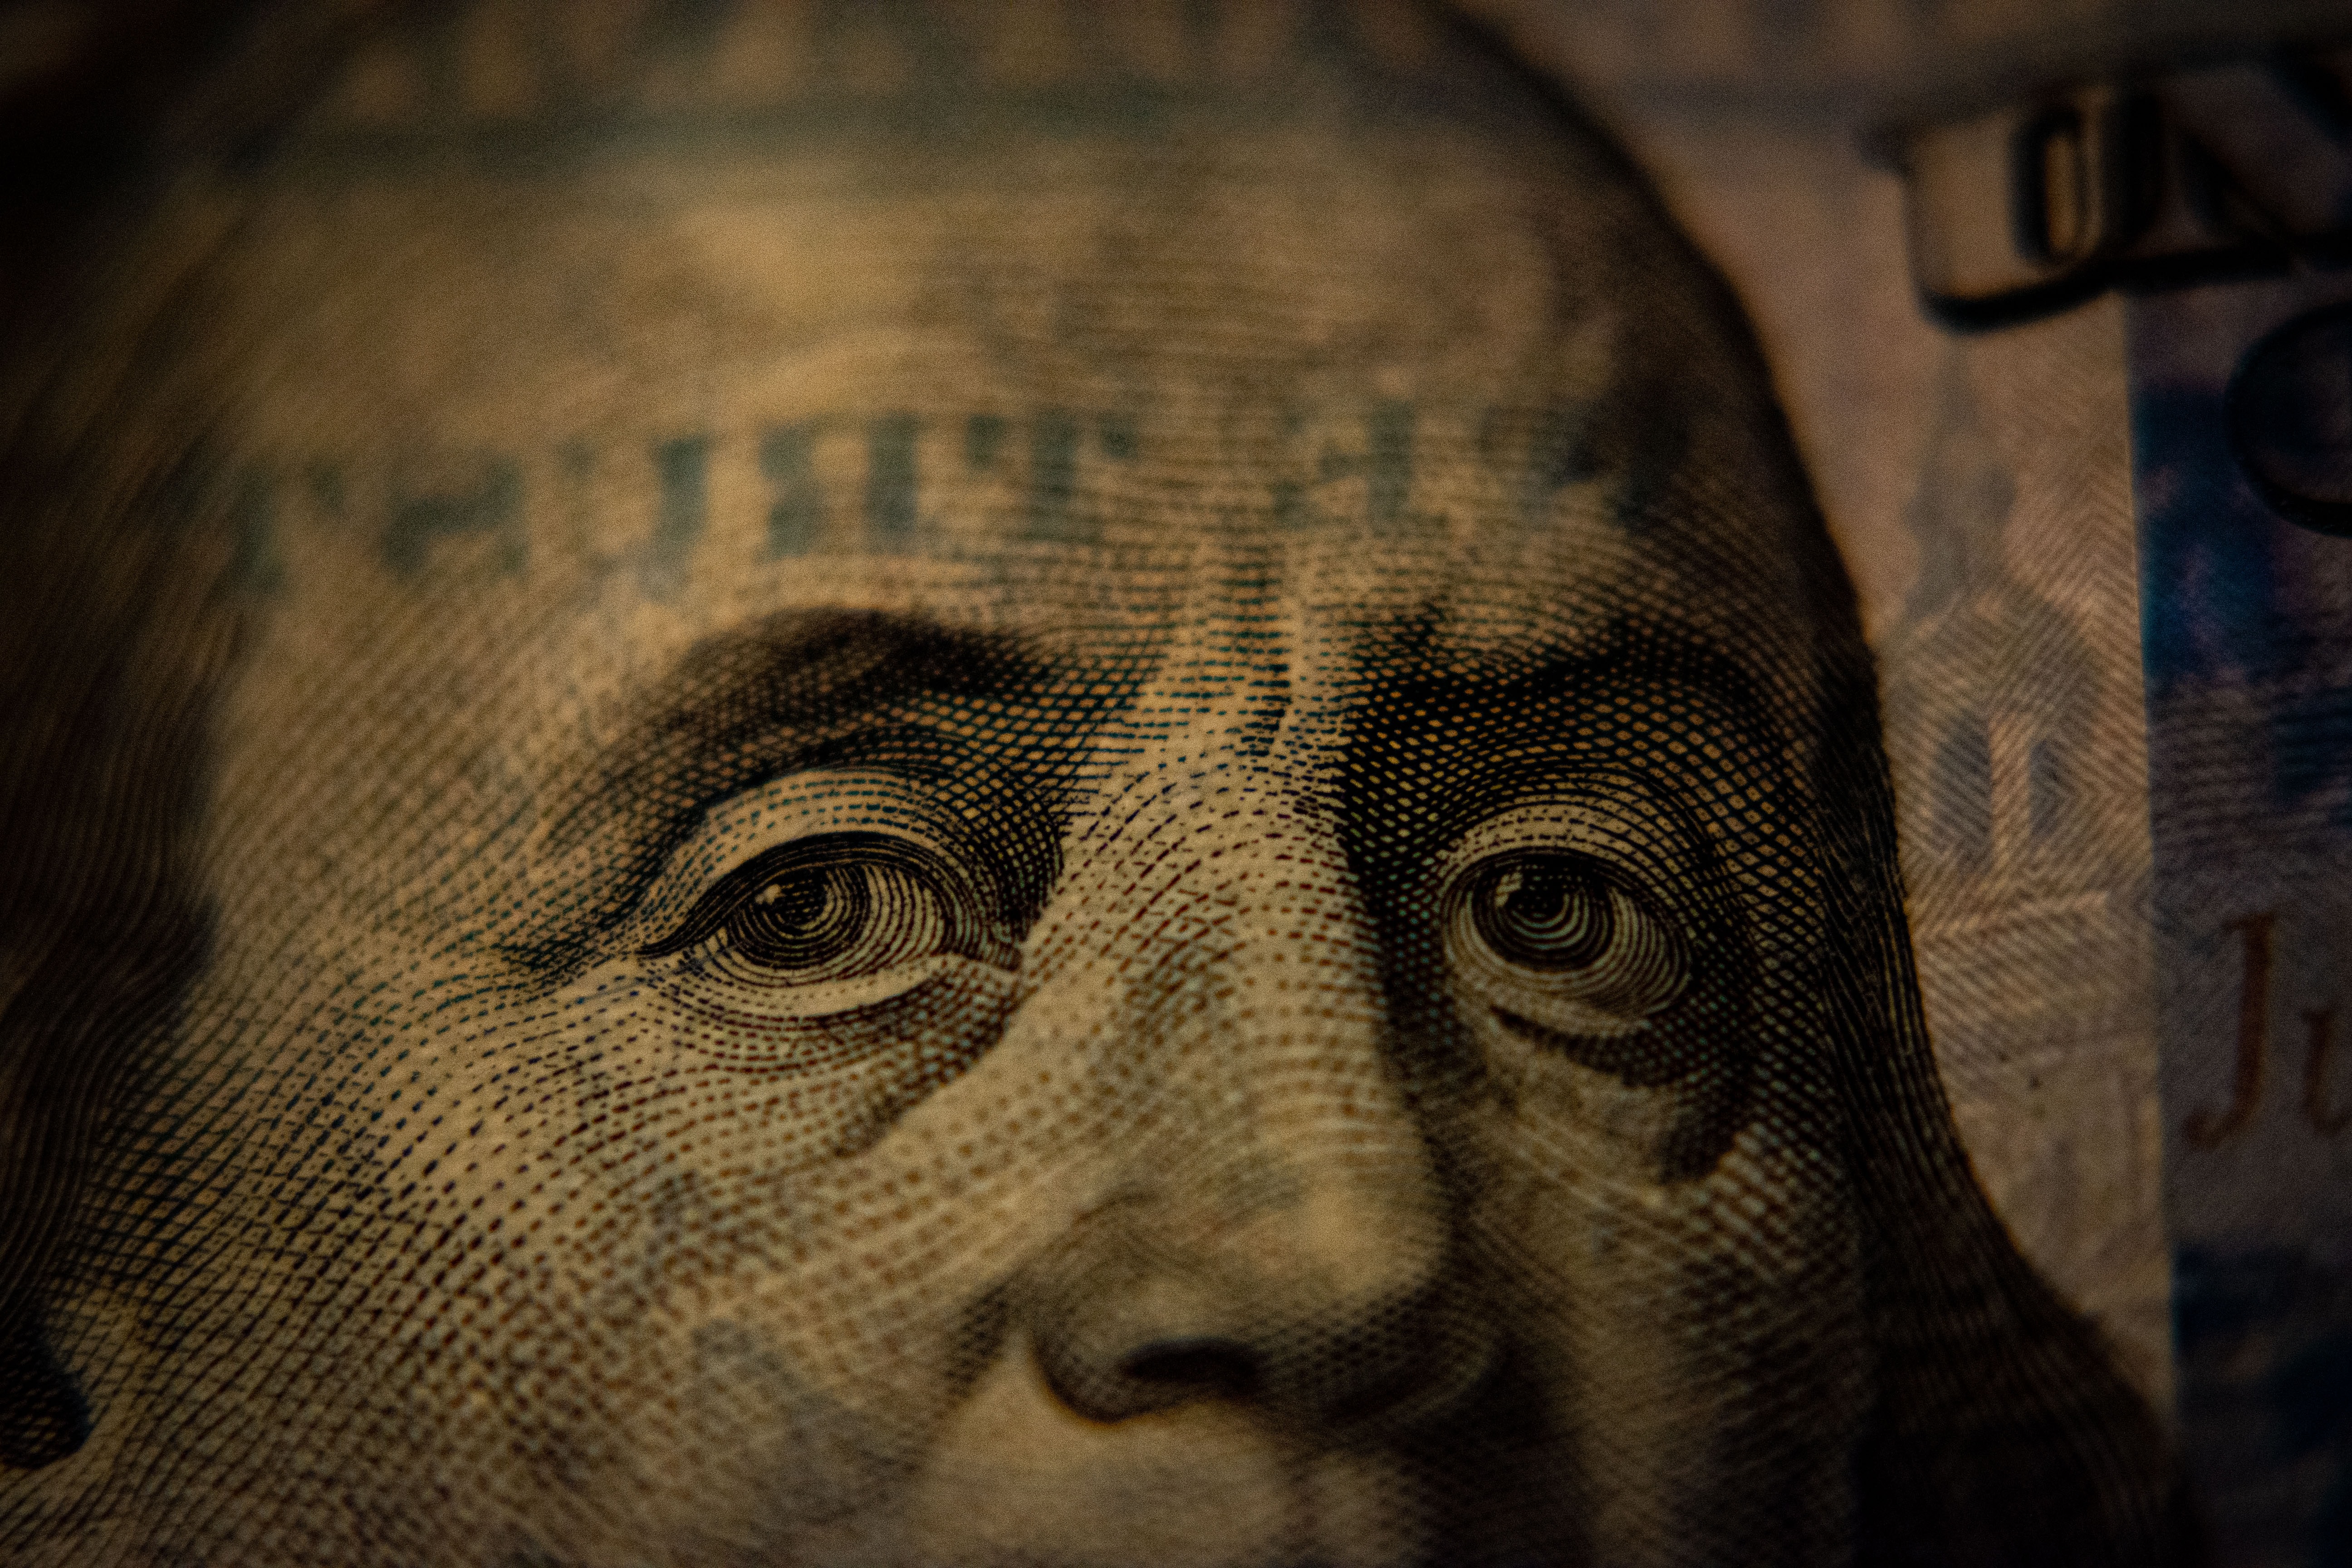 A closeup of a US hundred dollar bill (Benjamin Franklin side).